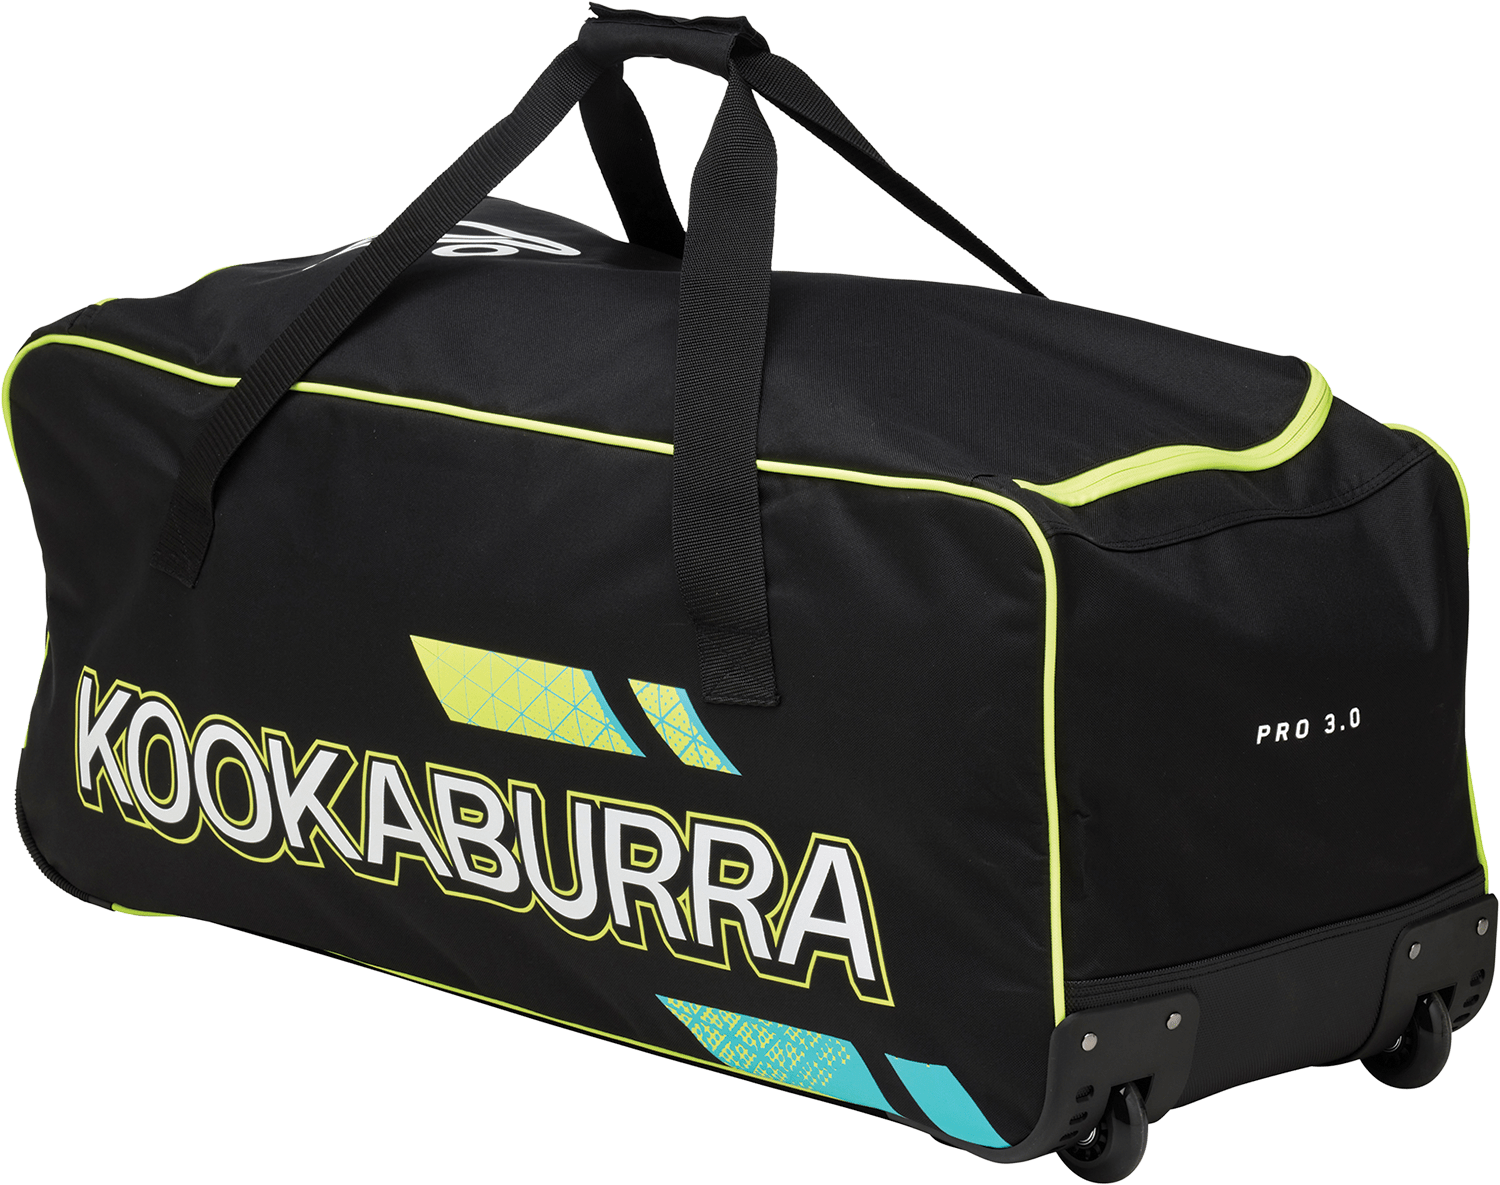 Kookaburra Cricket Bags Yellow Kookaburra 3.0 Wheelie Cricket Bag